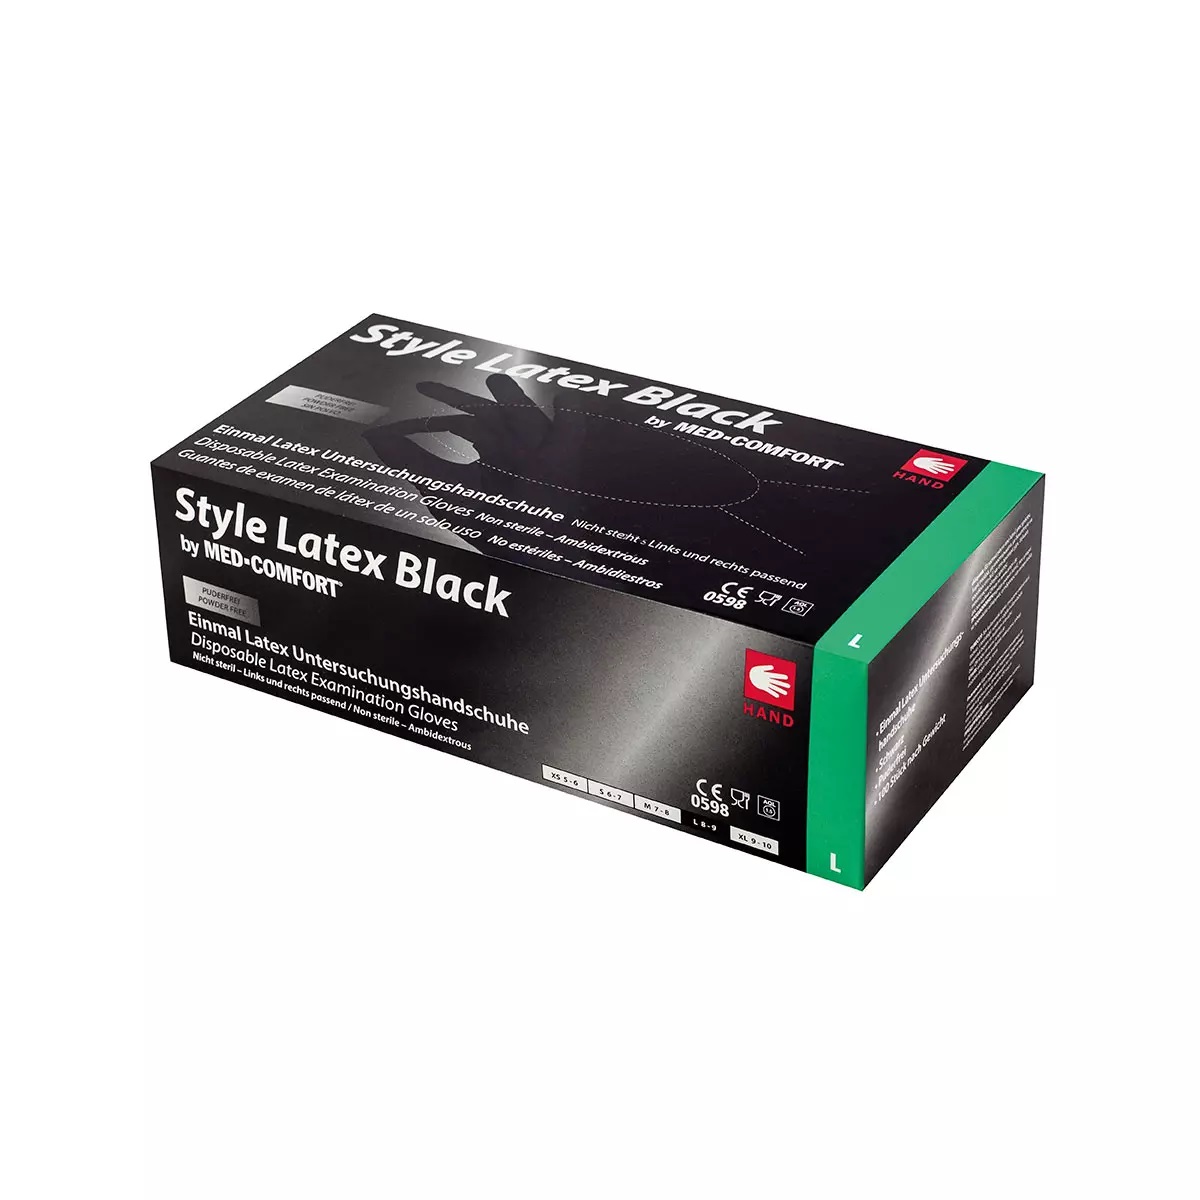 AMPRI-Einweg-Latex-Untersuchungshandschuhe, STYLE LATEX BLACK, puderfrei, VE = Pkg. á 100 Stück, schwarz